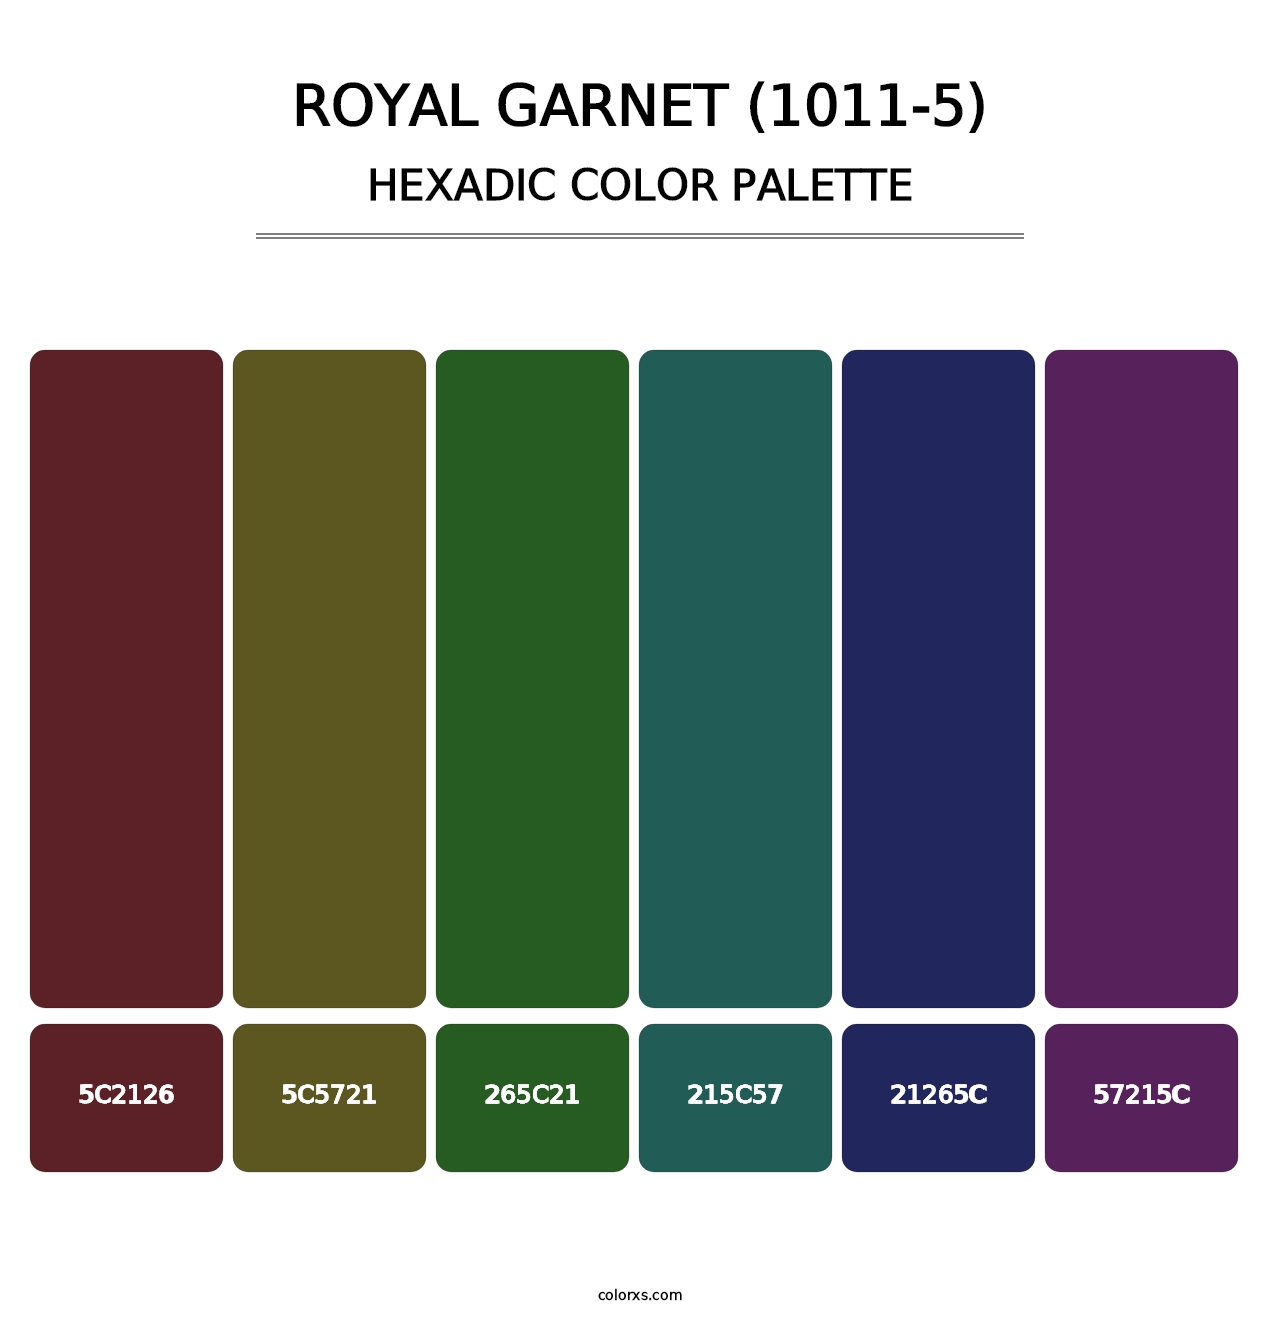 Royal Garnet (1011-5) - Hexadic Color Palette